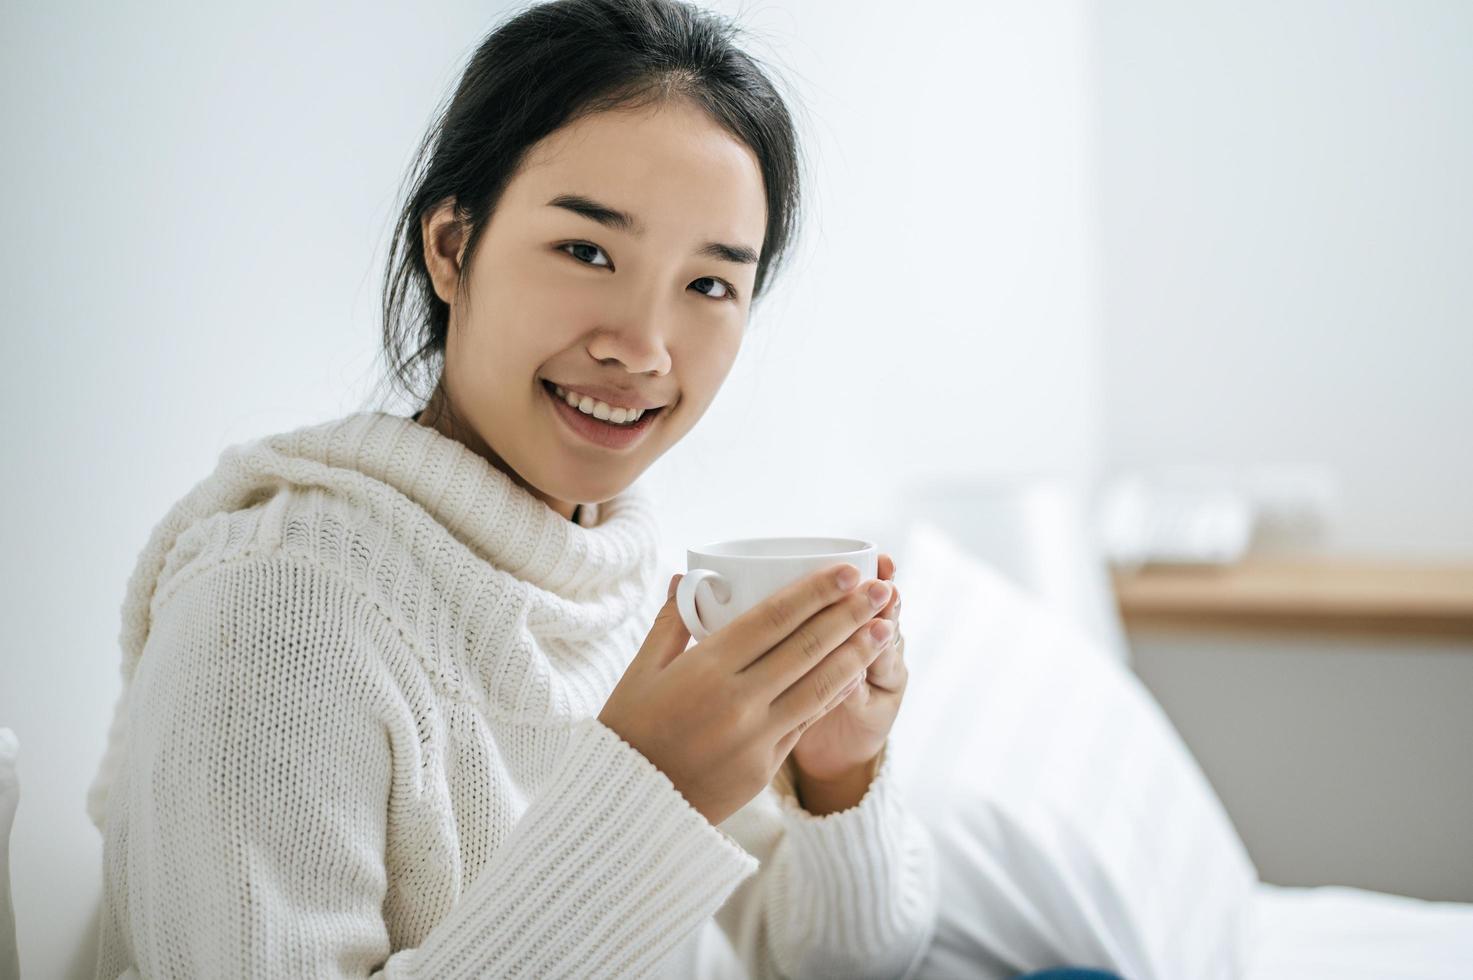 ung kvinna som håller en kaffekopp i sängen foto